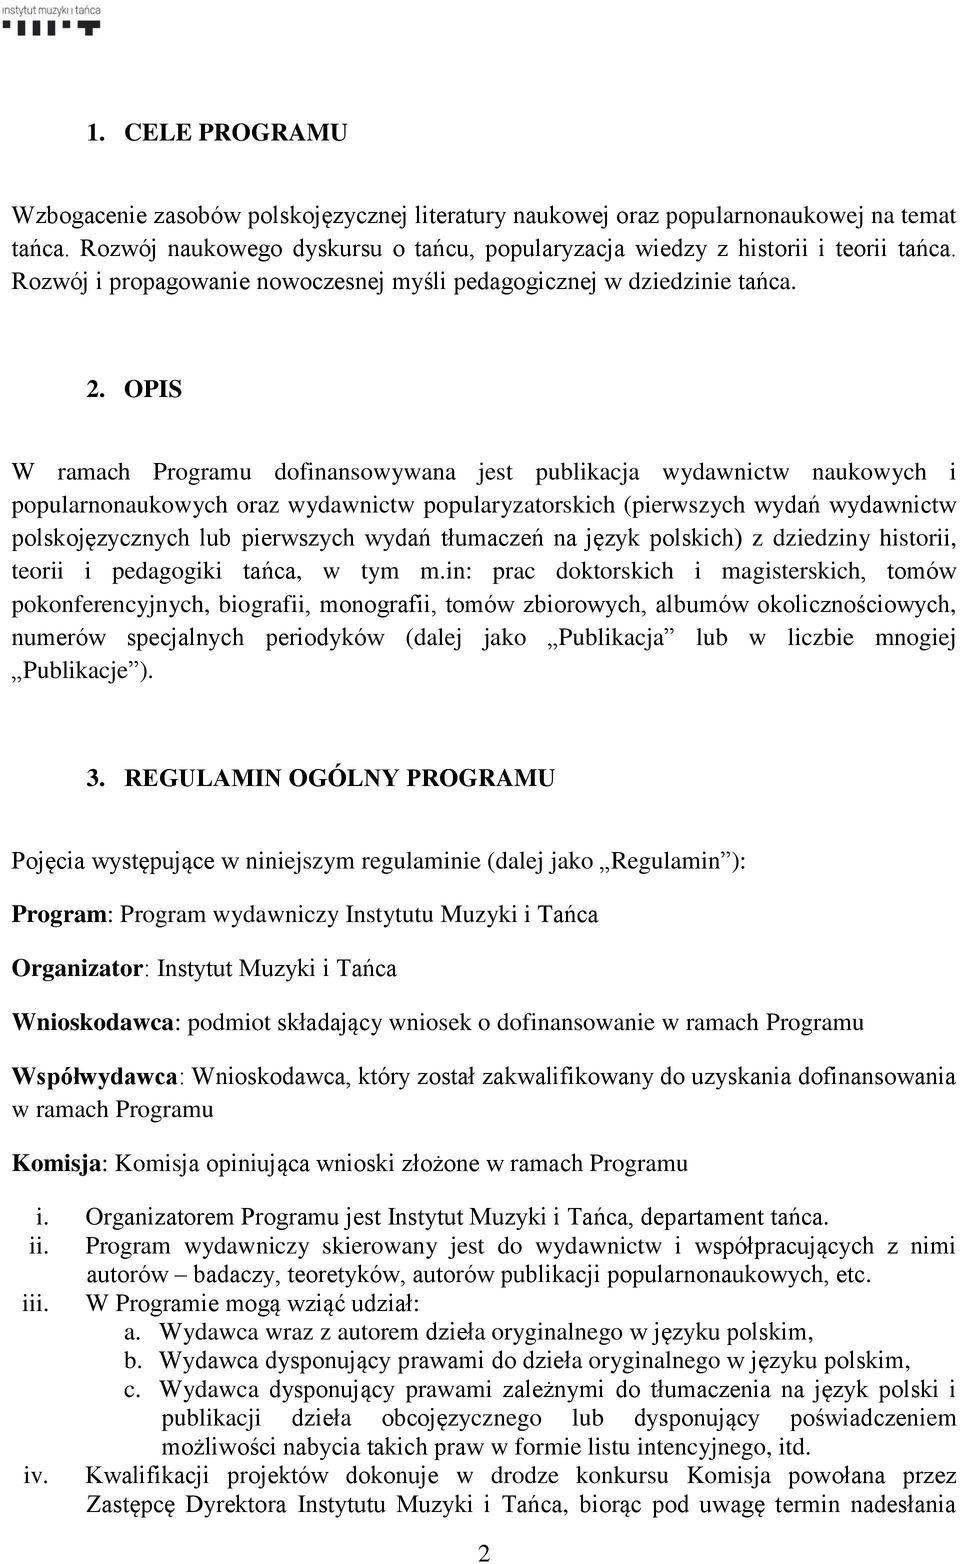 OPIS W ramach Programu dofinansowywana jest publikacja wydawnictw naukowych i popularnonaukowych oraz wydawnictw popularyzatorskich (pierwszych wydań wydawnictw polskojęzycznych lub pierwszych wydań